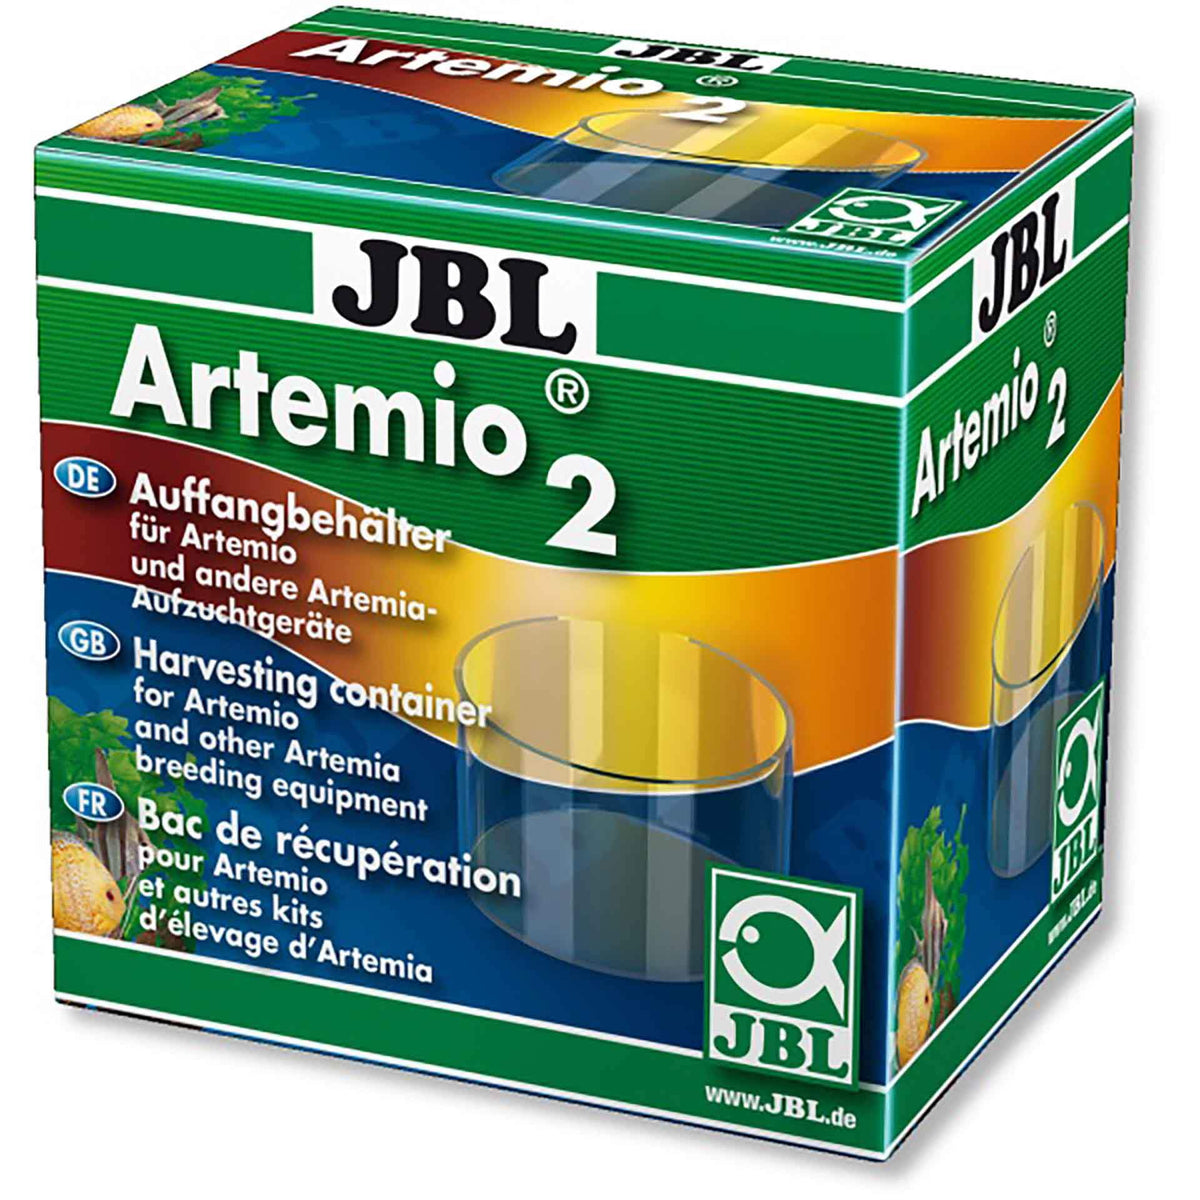 JBL Artemio 2 Brine Shrimp Harvesting Container